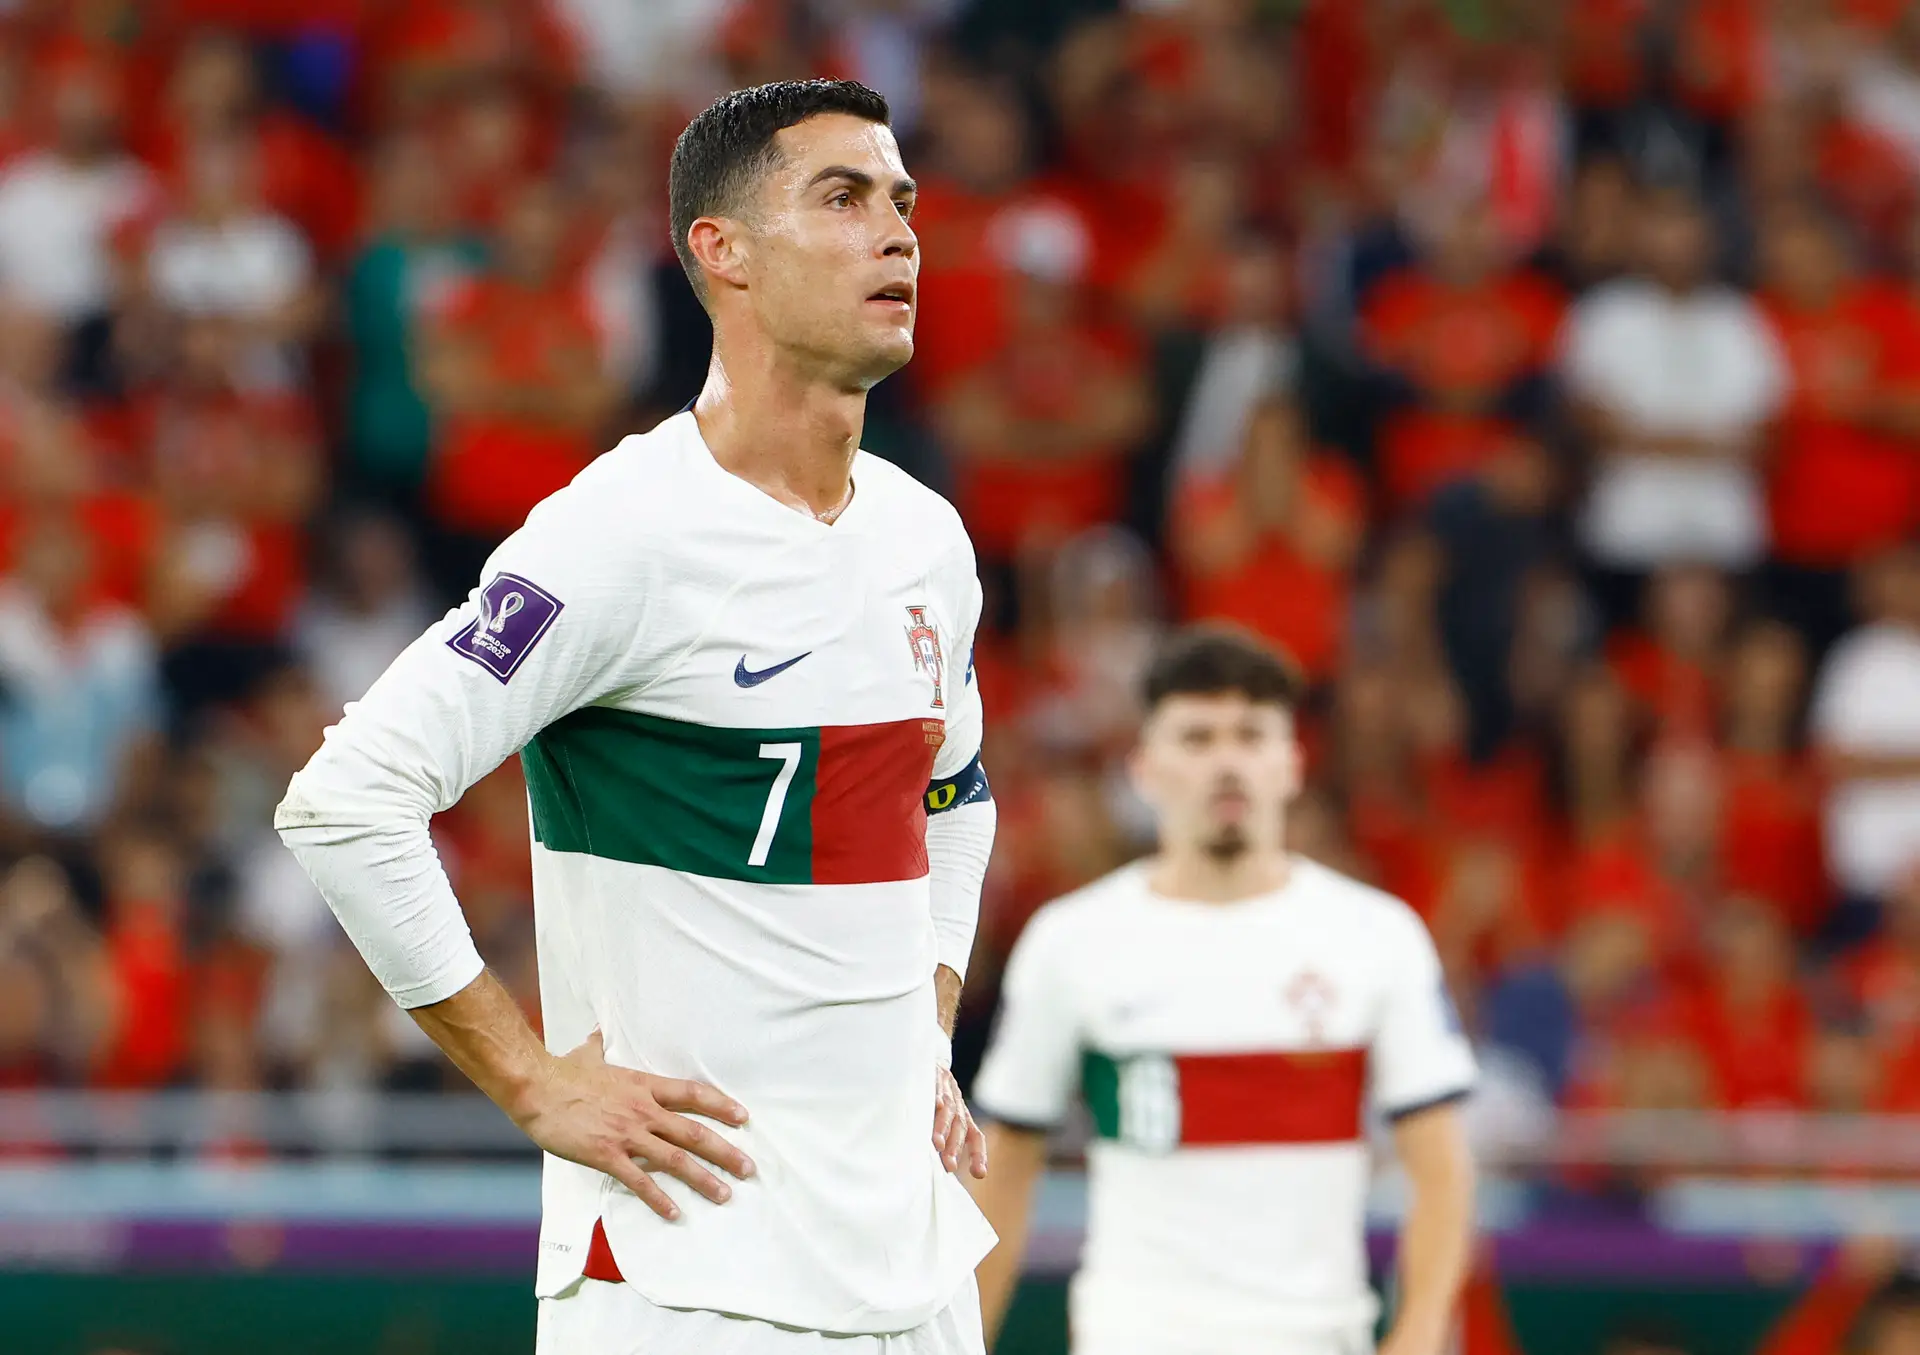 RESULTADO DO JOGO DE PORTUGAL HOJE (10): Portugal eliminado? Veja o placar  de Marrocos x Portugal na Copa do Mundo 2022